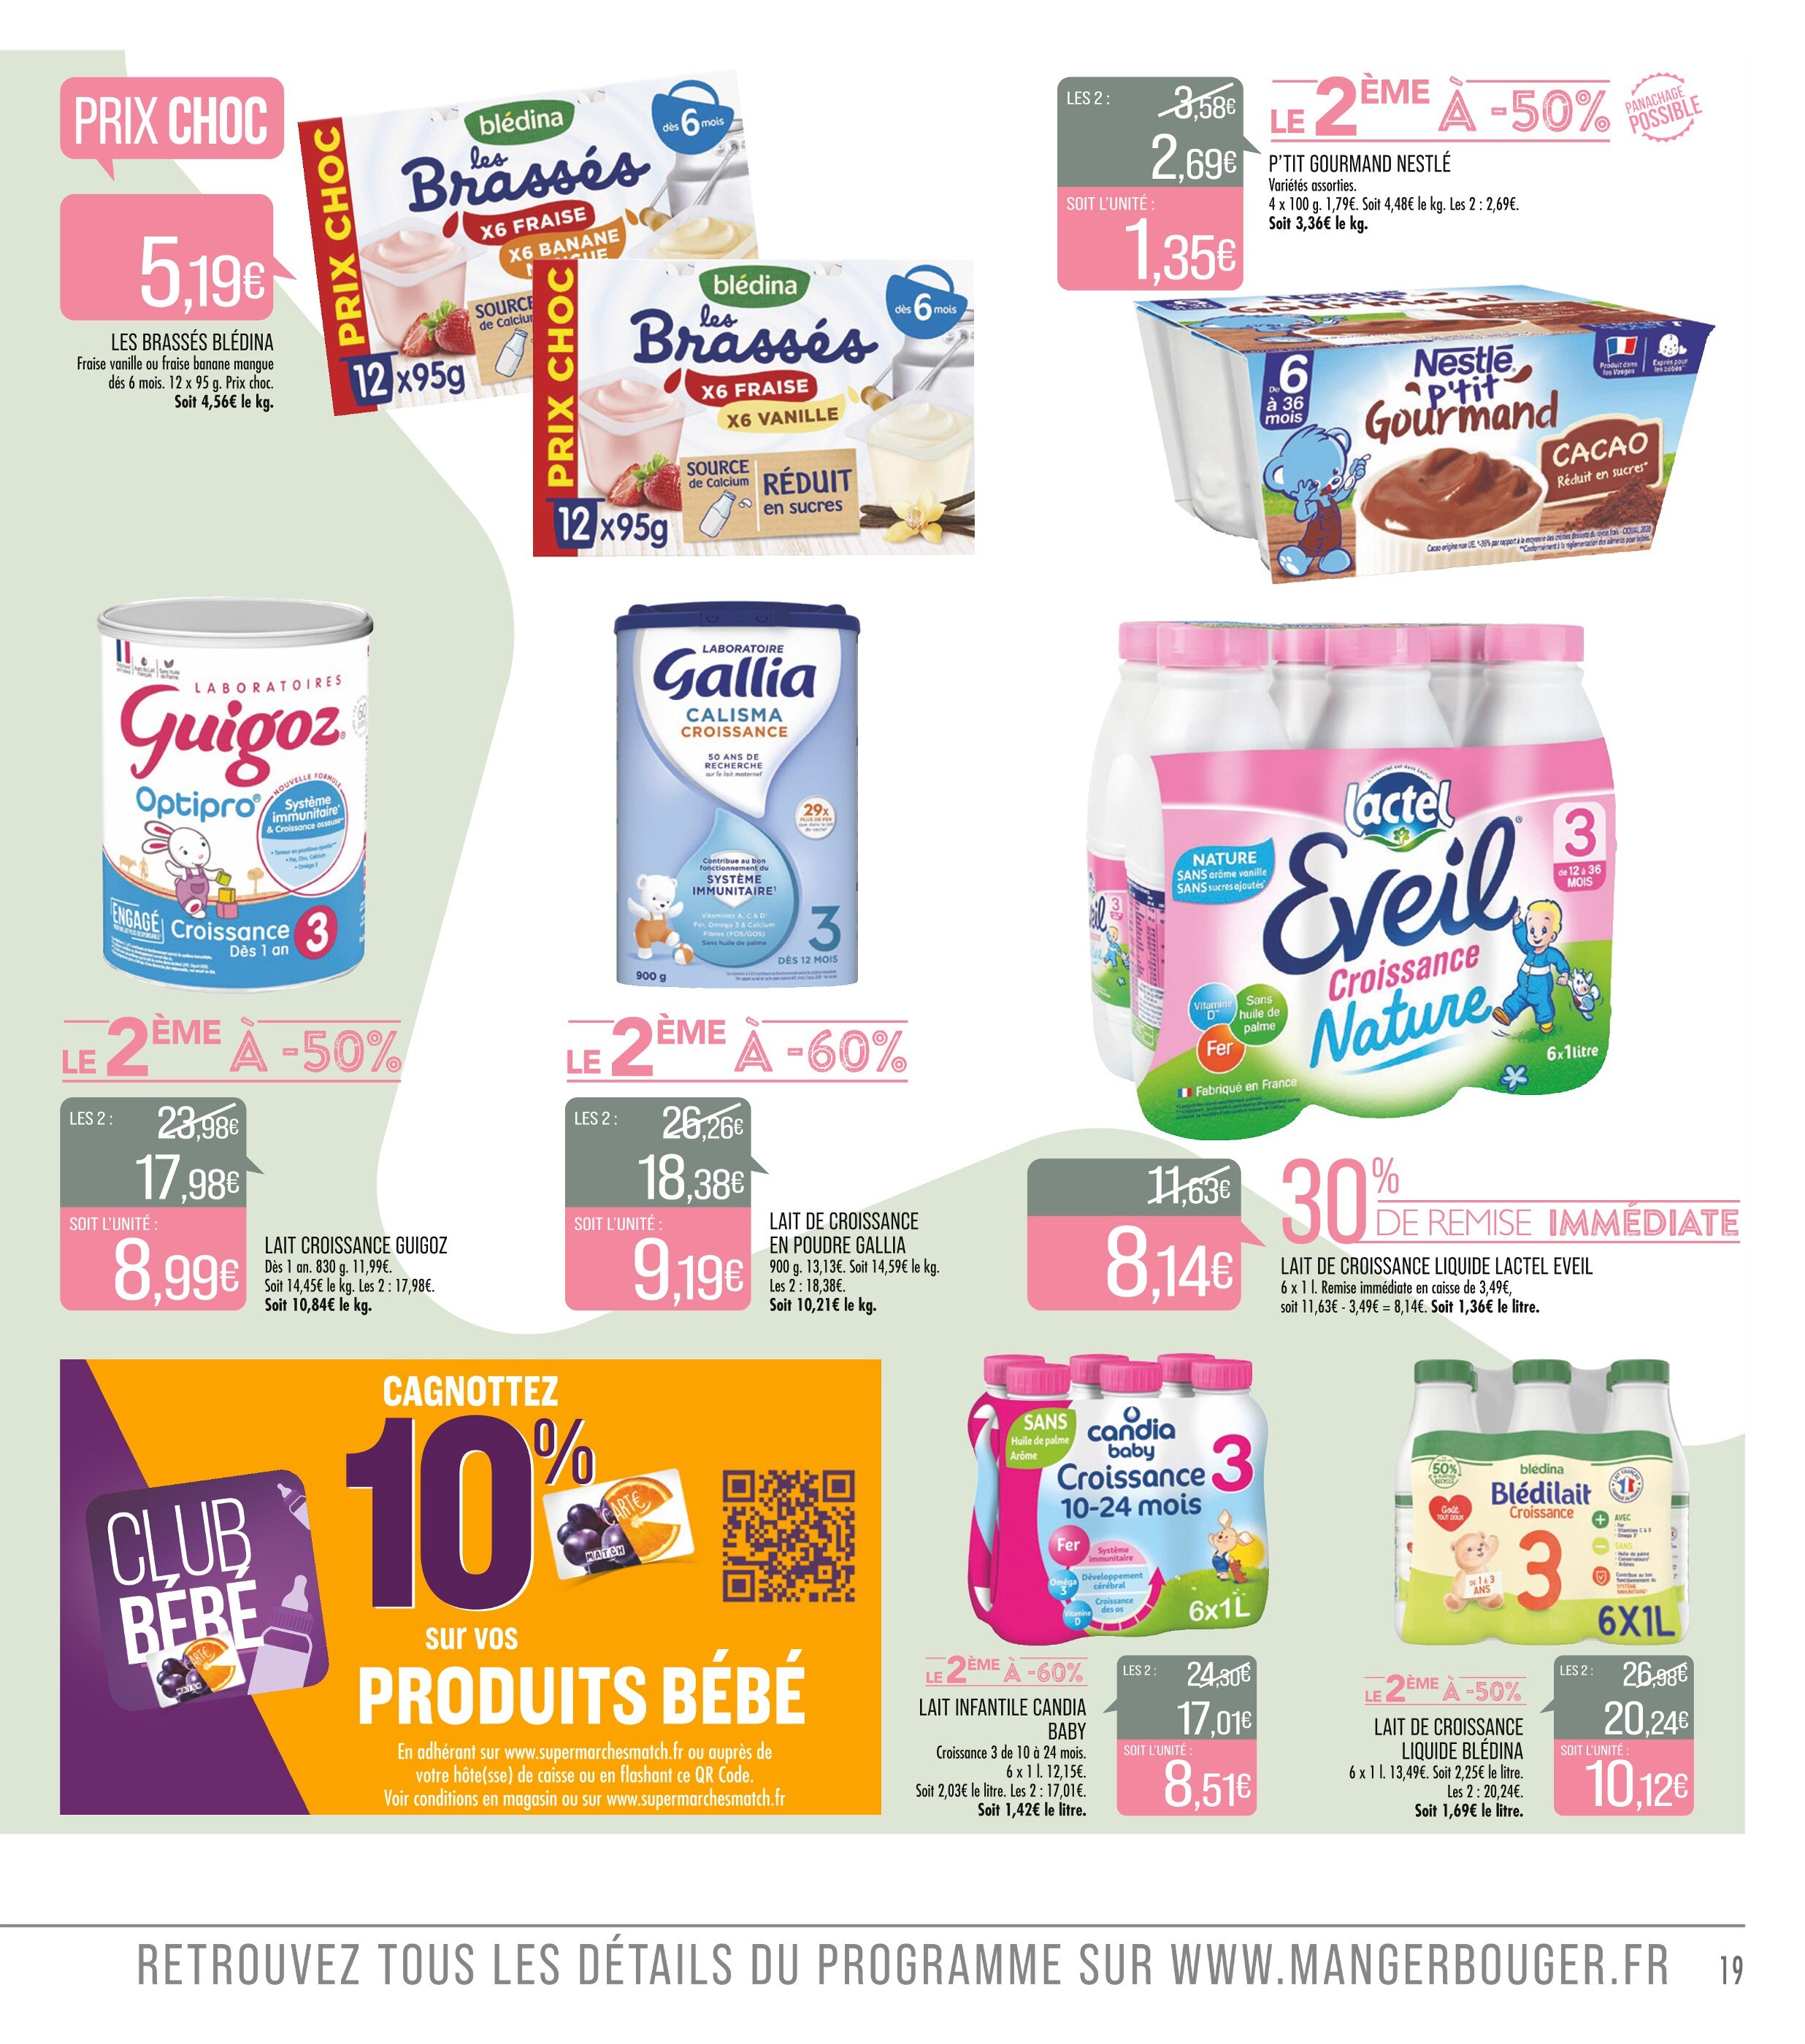 Lait Bébé Auchan ᐅ Promos et prix dans le catalogue de la semaine